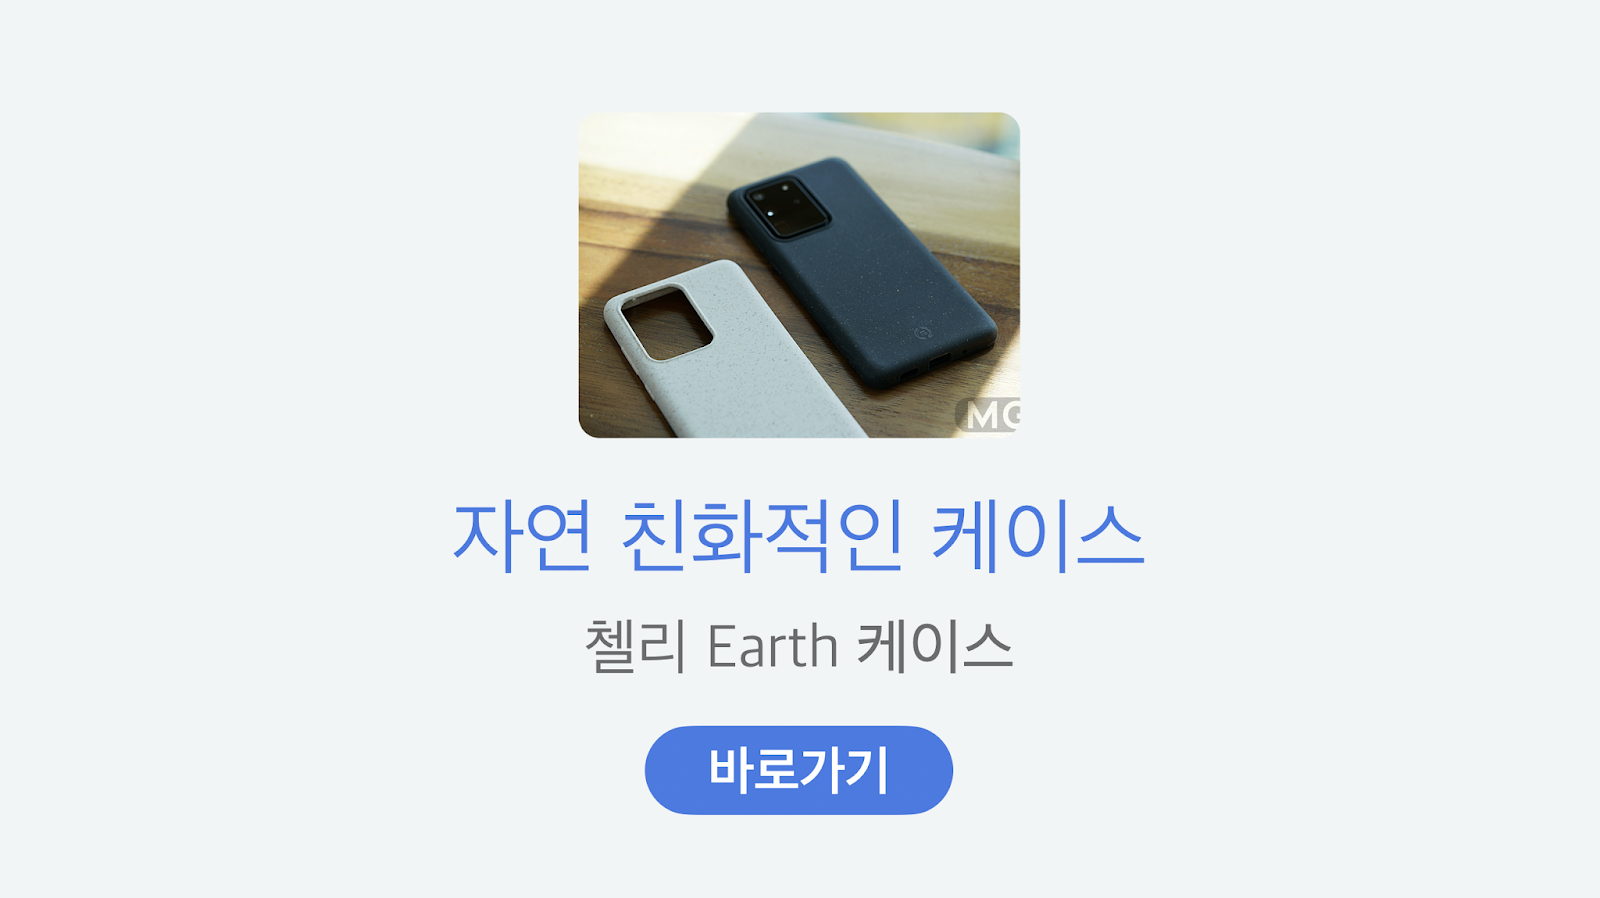 https://smartstore.naver.com/hyodongkorea/search?q=%EC%96%B4%EC%8A%A4